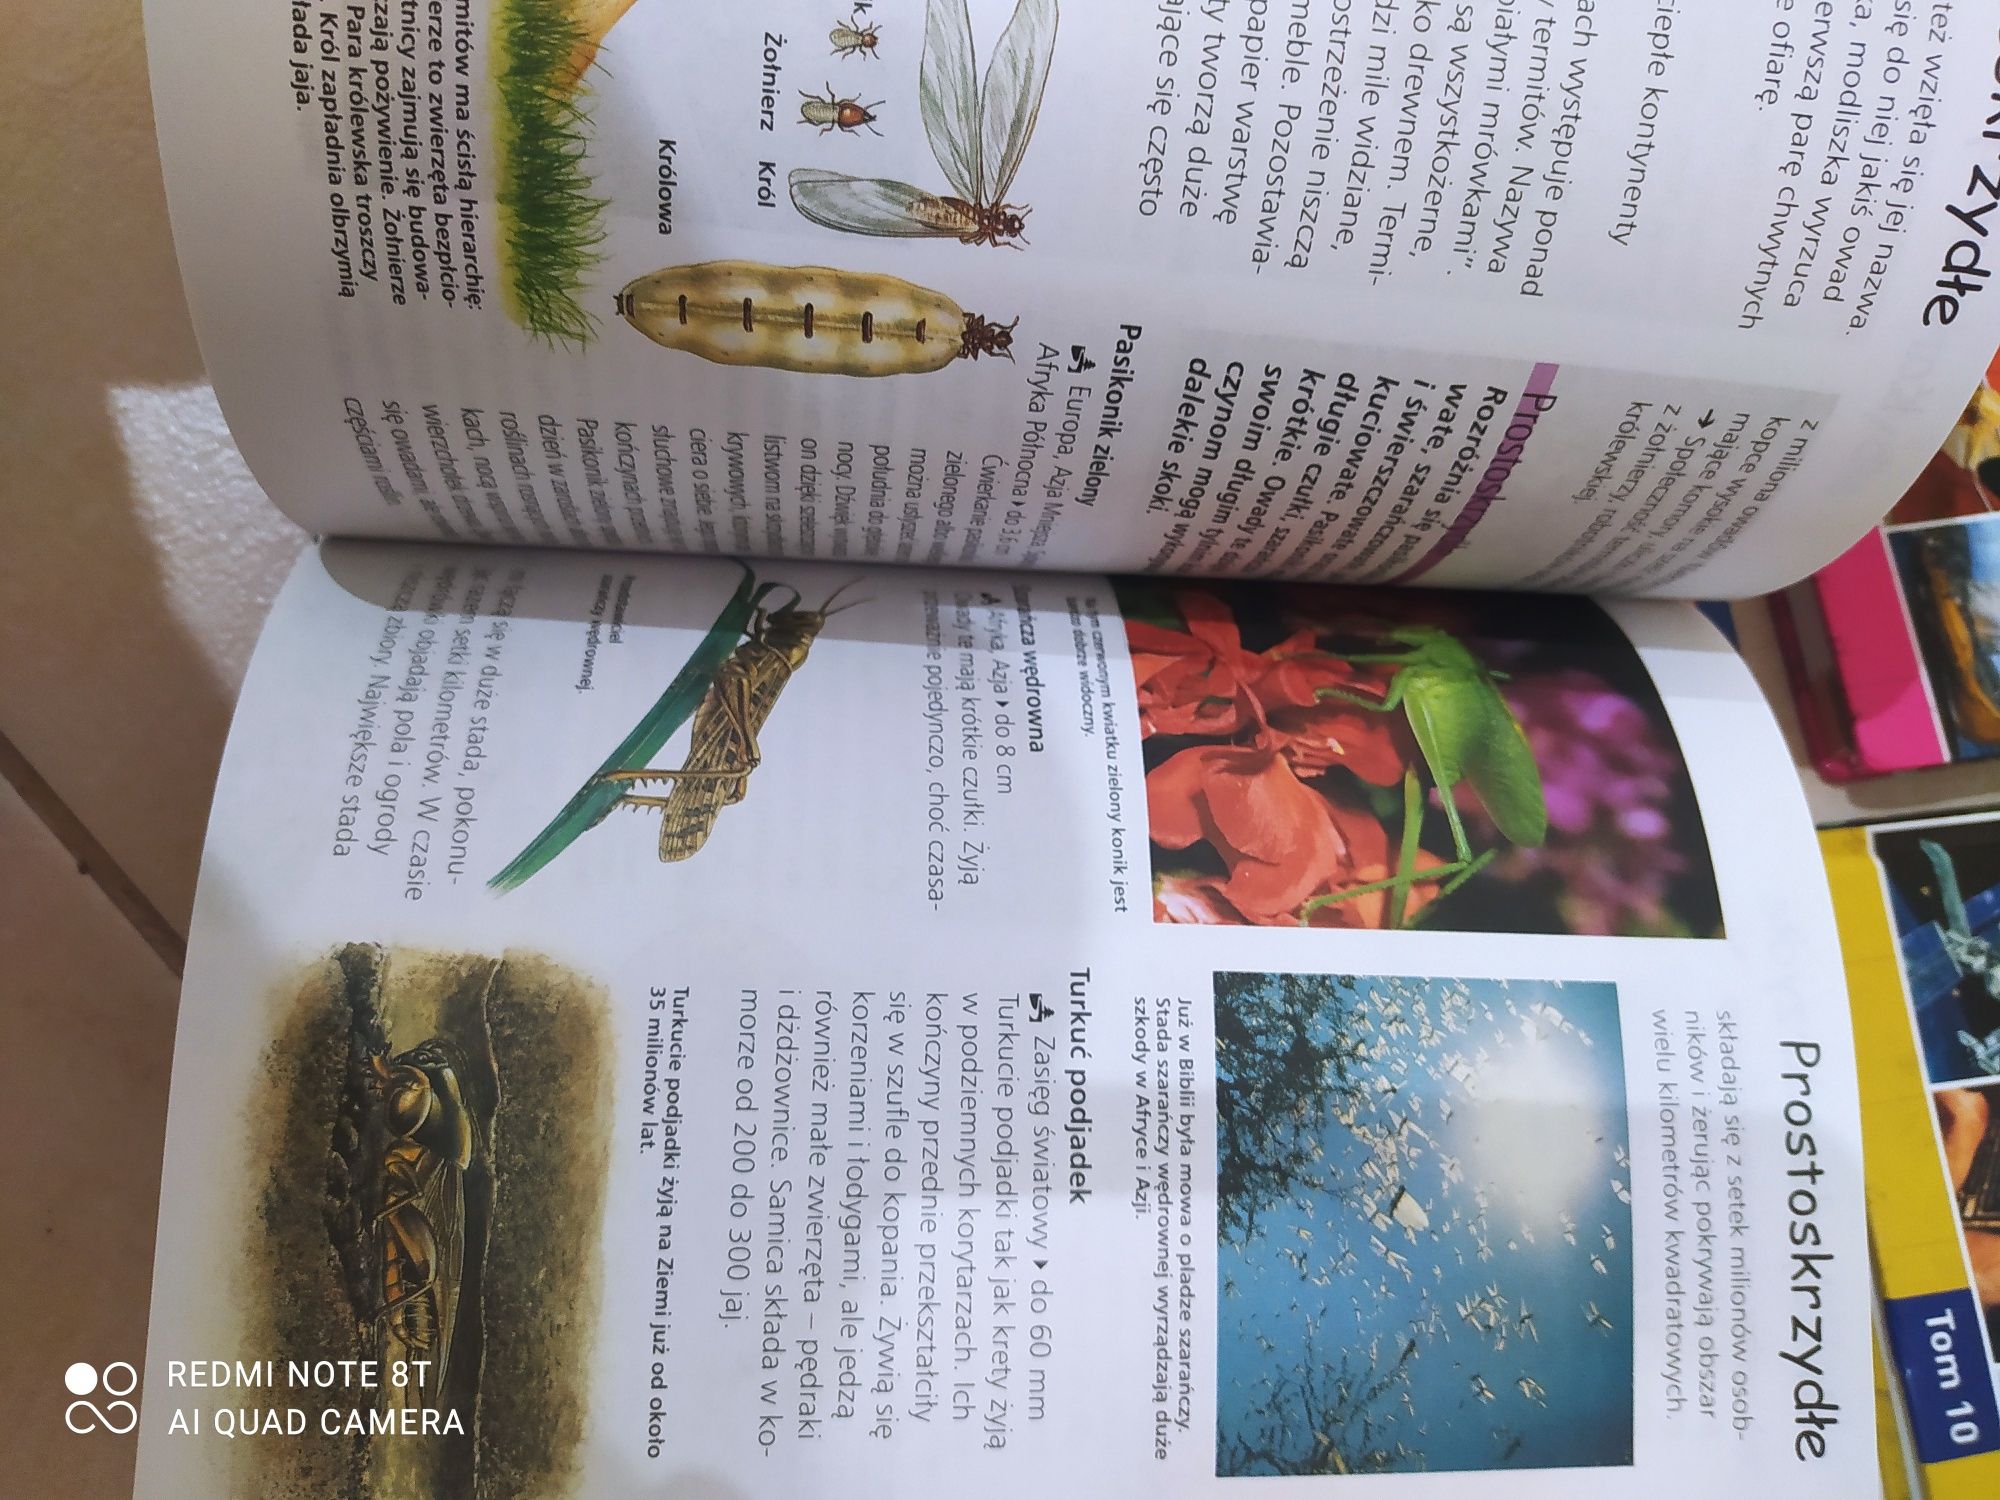 Encyklopedia szkolna * 4 książki Zwierzęta, Odkrycia wynalazki